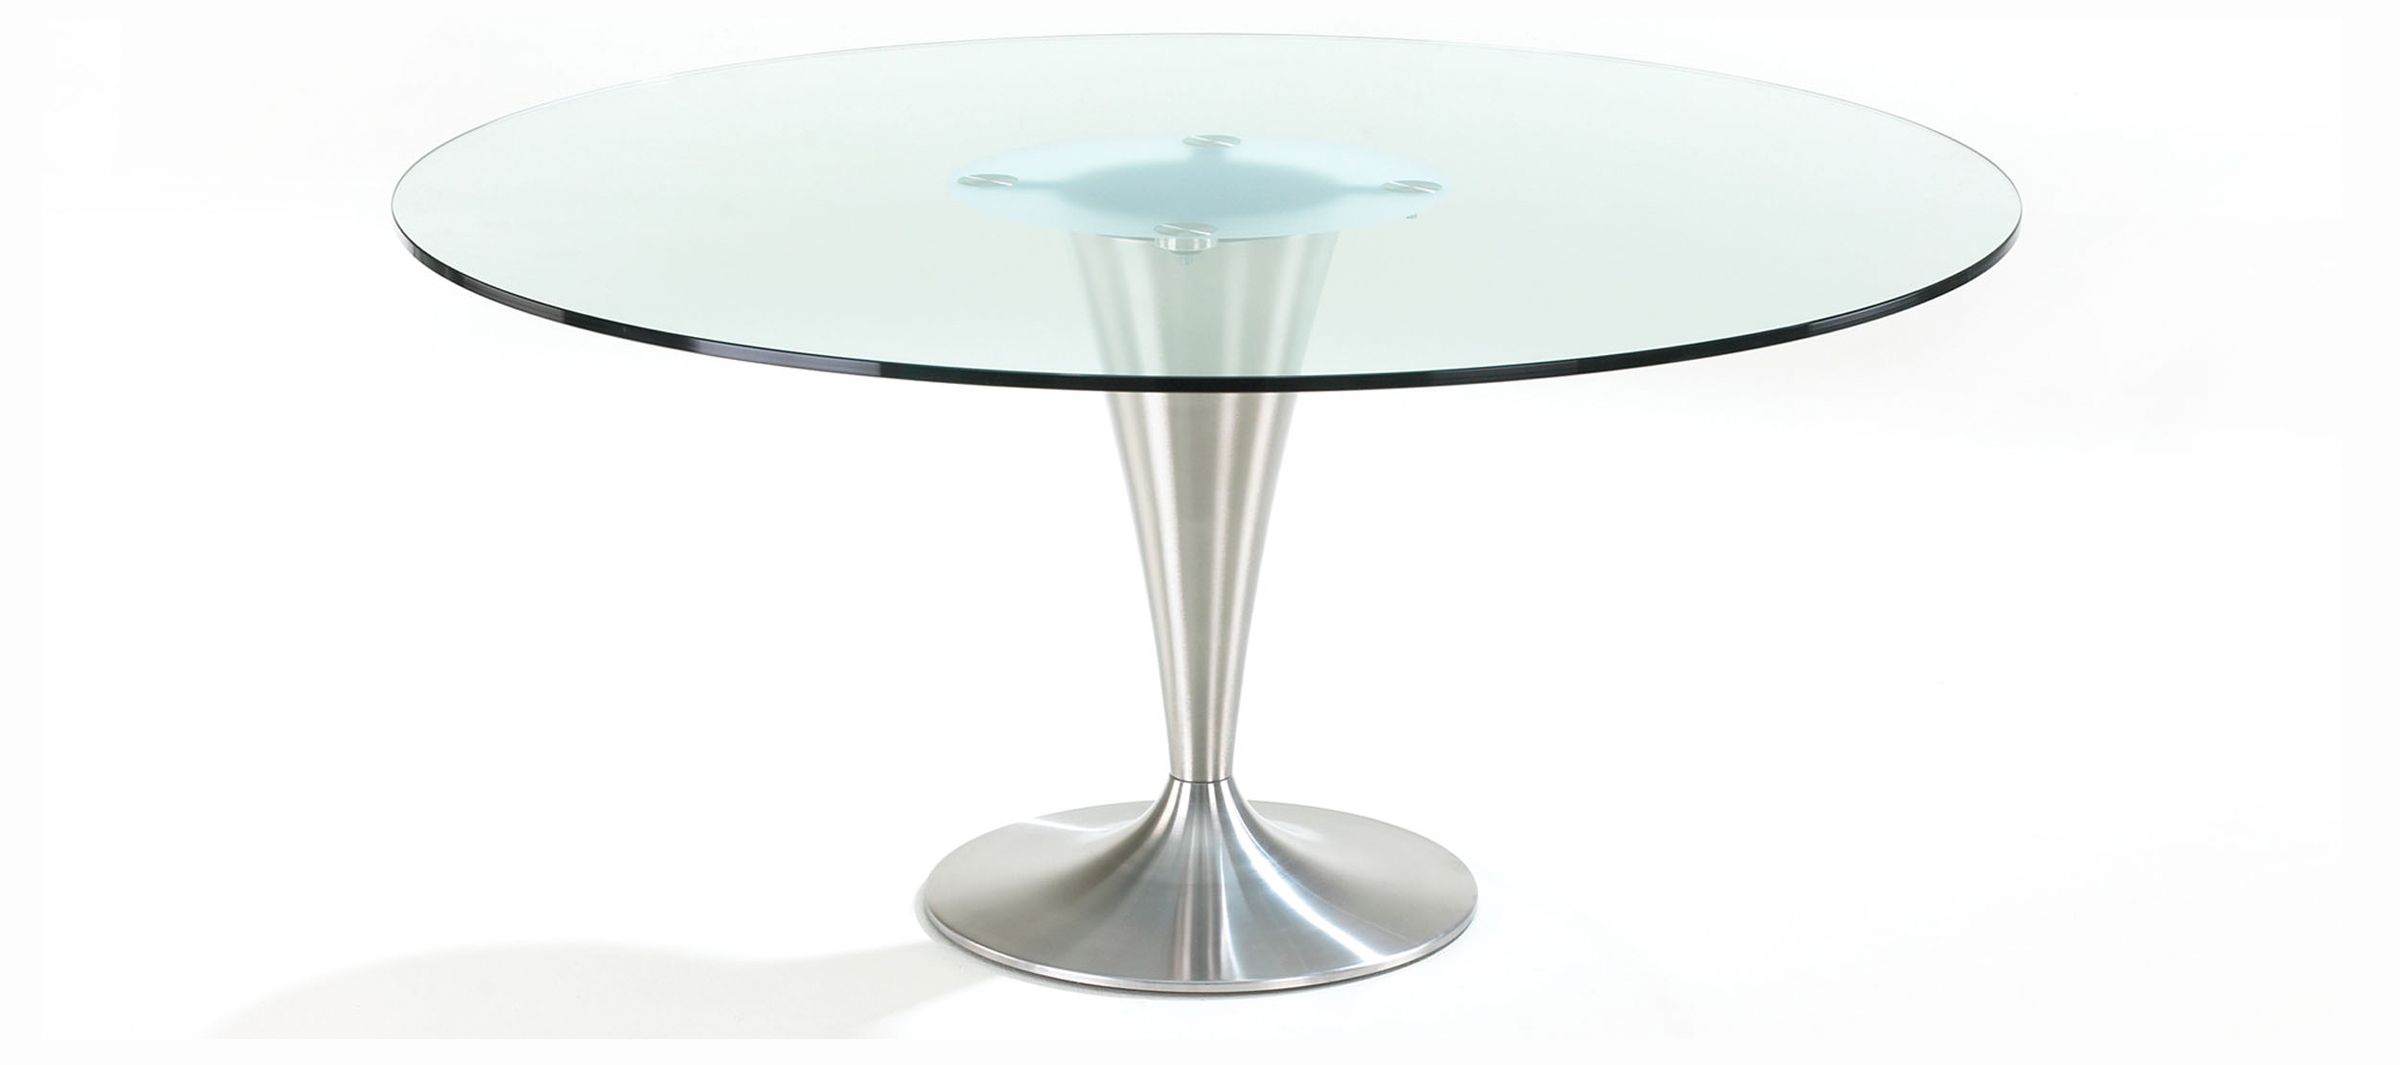 Ontwerp een unieke designtafel met glazen tafelblad